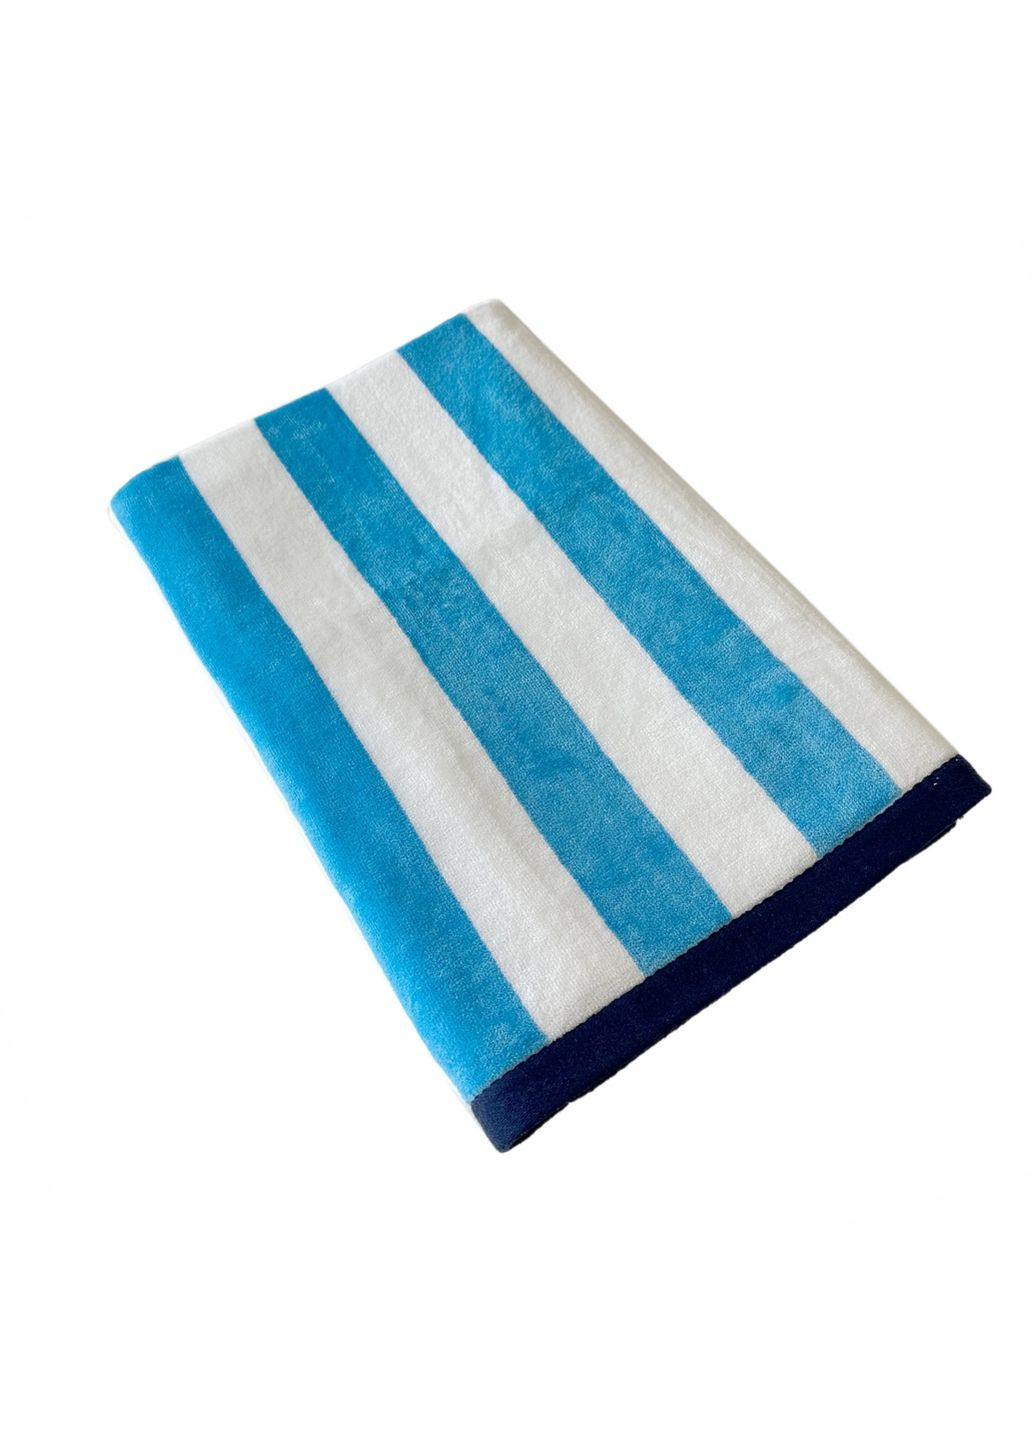 Lovely Svi рушник xxl (90 на180 см) - бавовна велюр/махра - банні пляжні в басейн біло - синій смужка синій виробництво - Китай